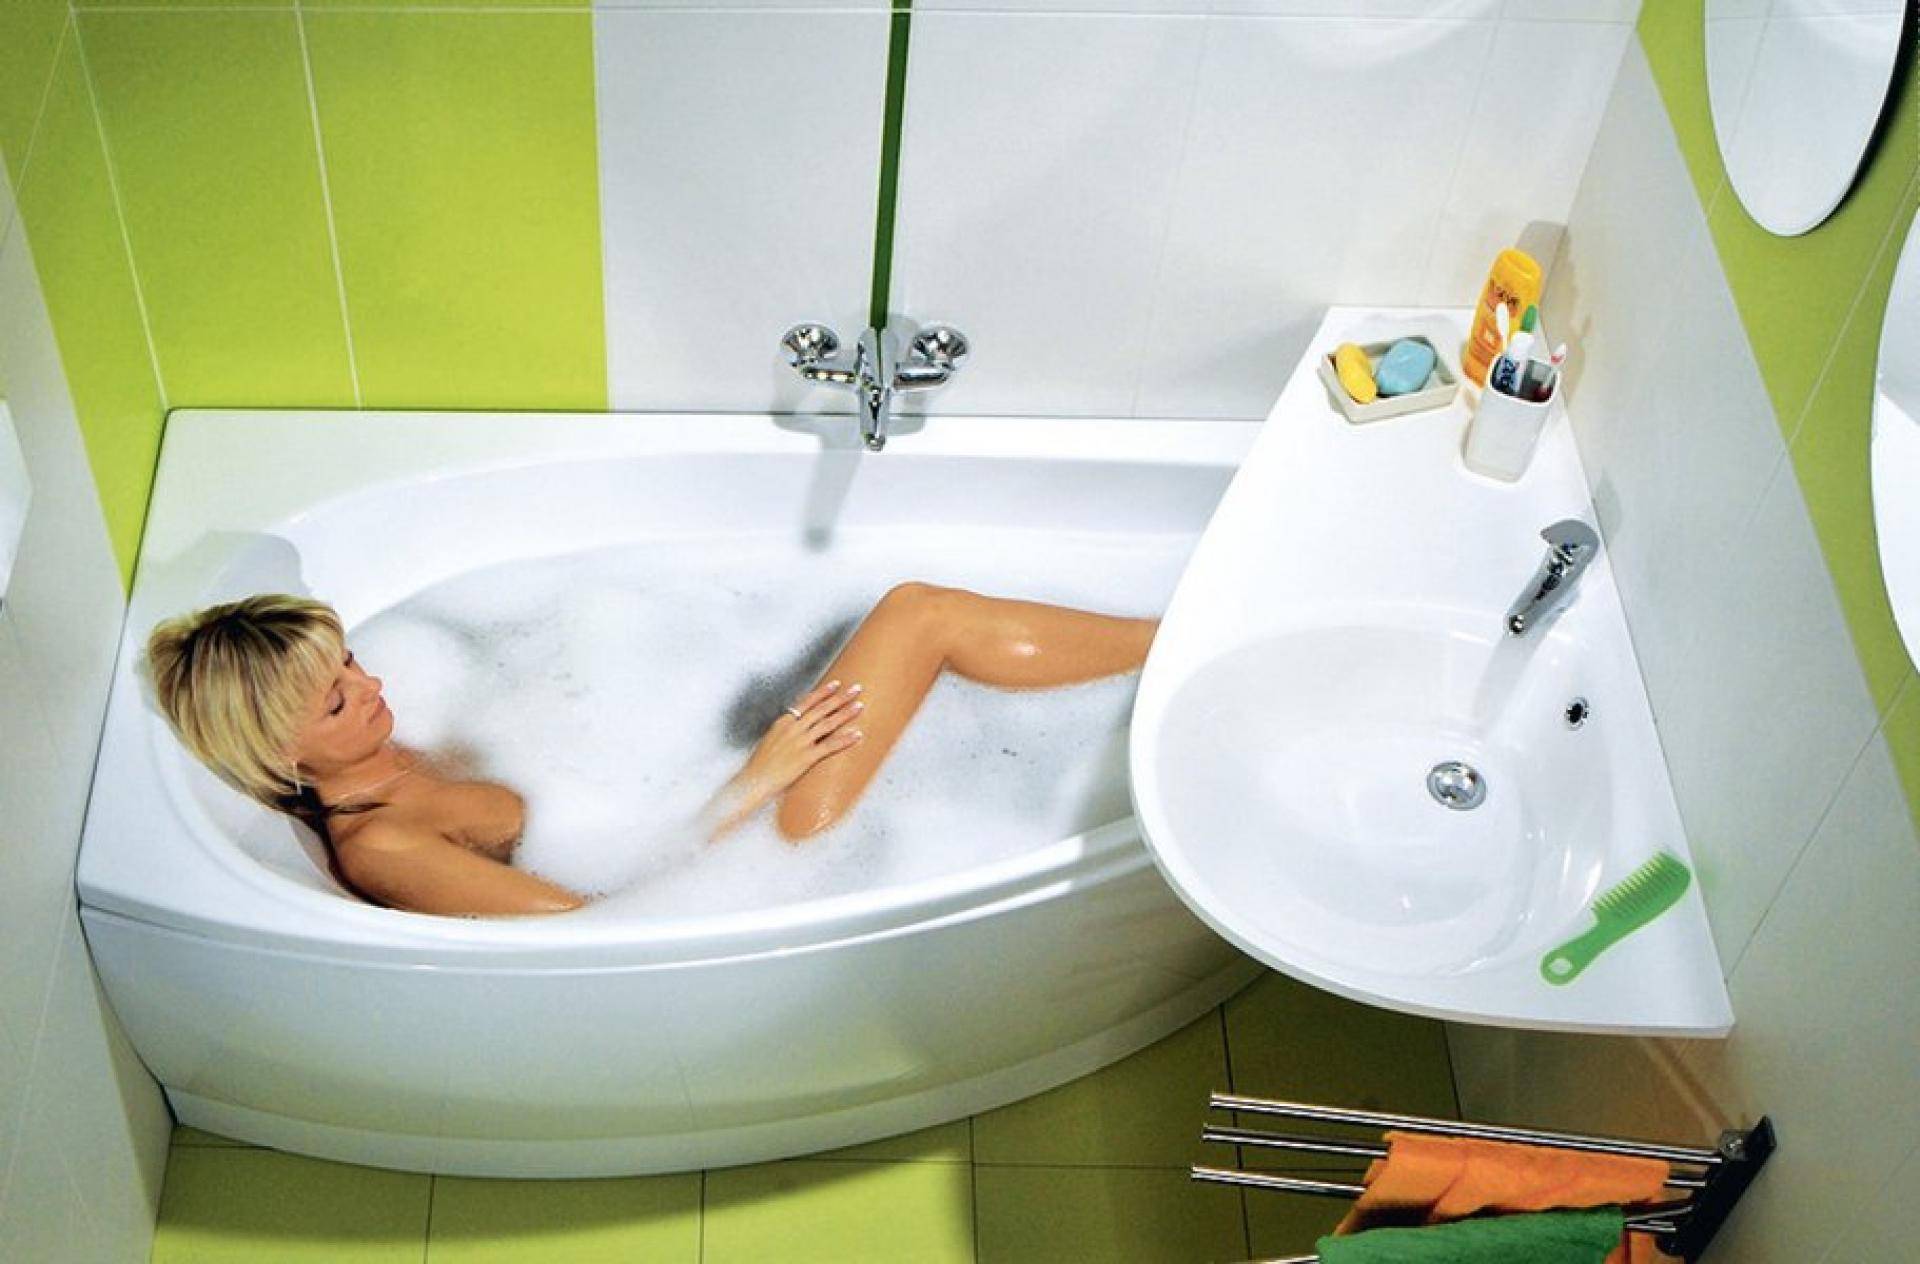 Акриловая ванна: плюсы и минусы, недостатки и преимущества перед стальной, из чего делают чугунные, что за материал - отзывы